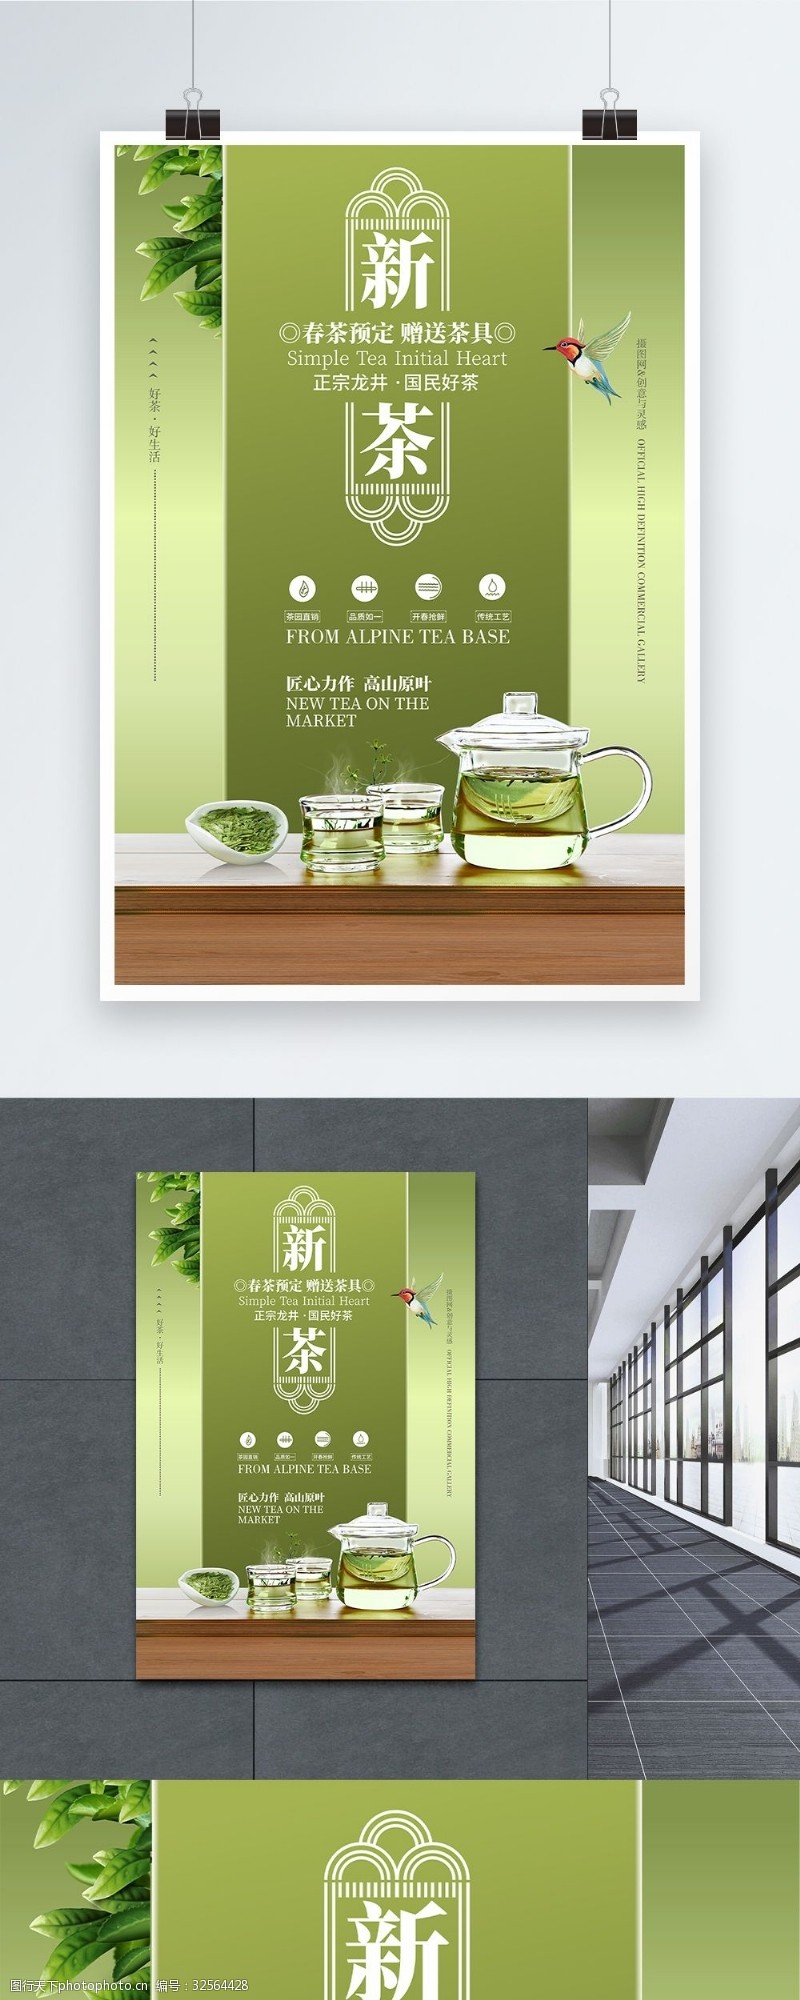 新上市茶叶绿茶上市促销简约大气海报